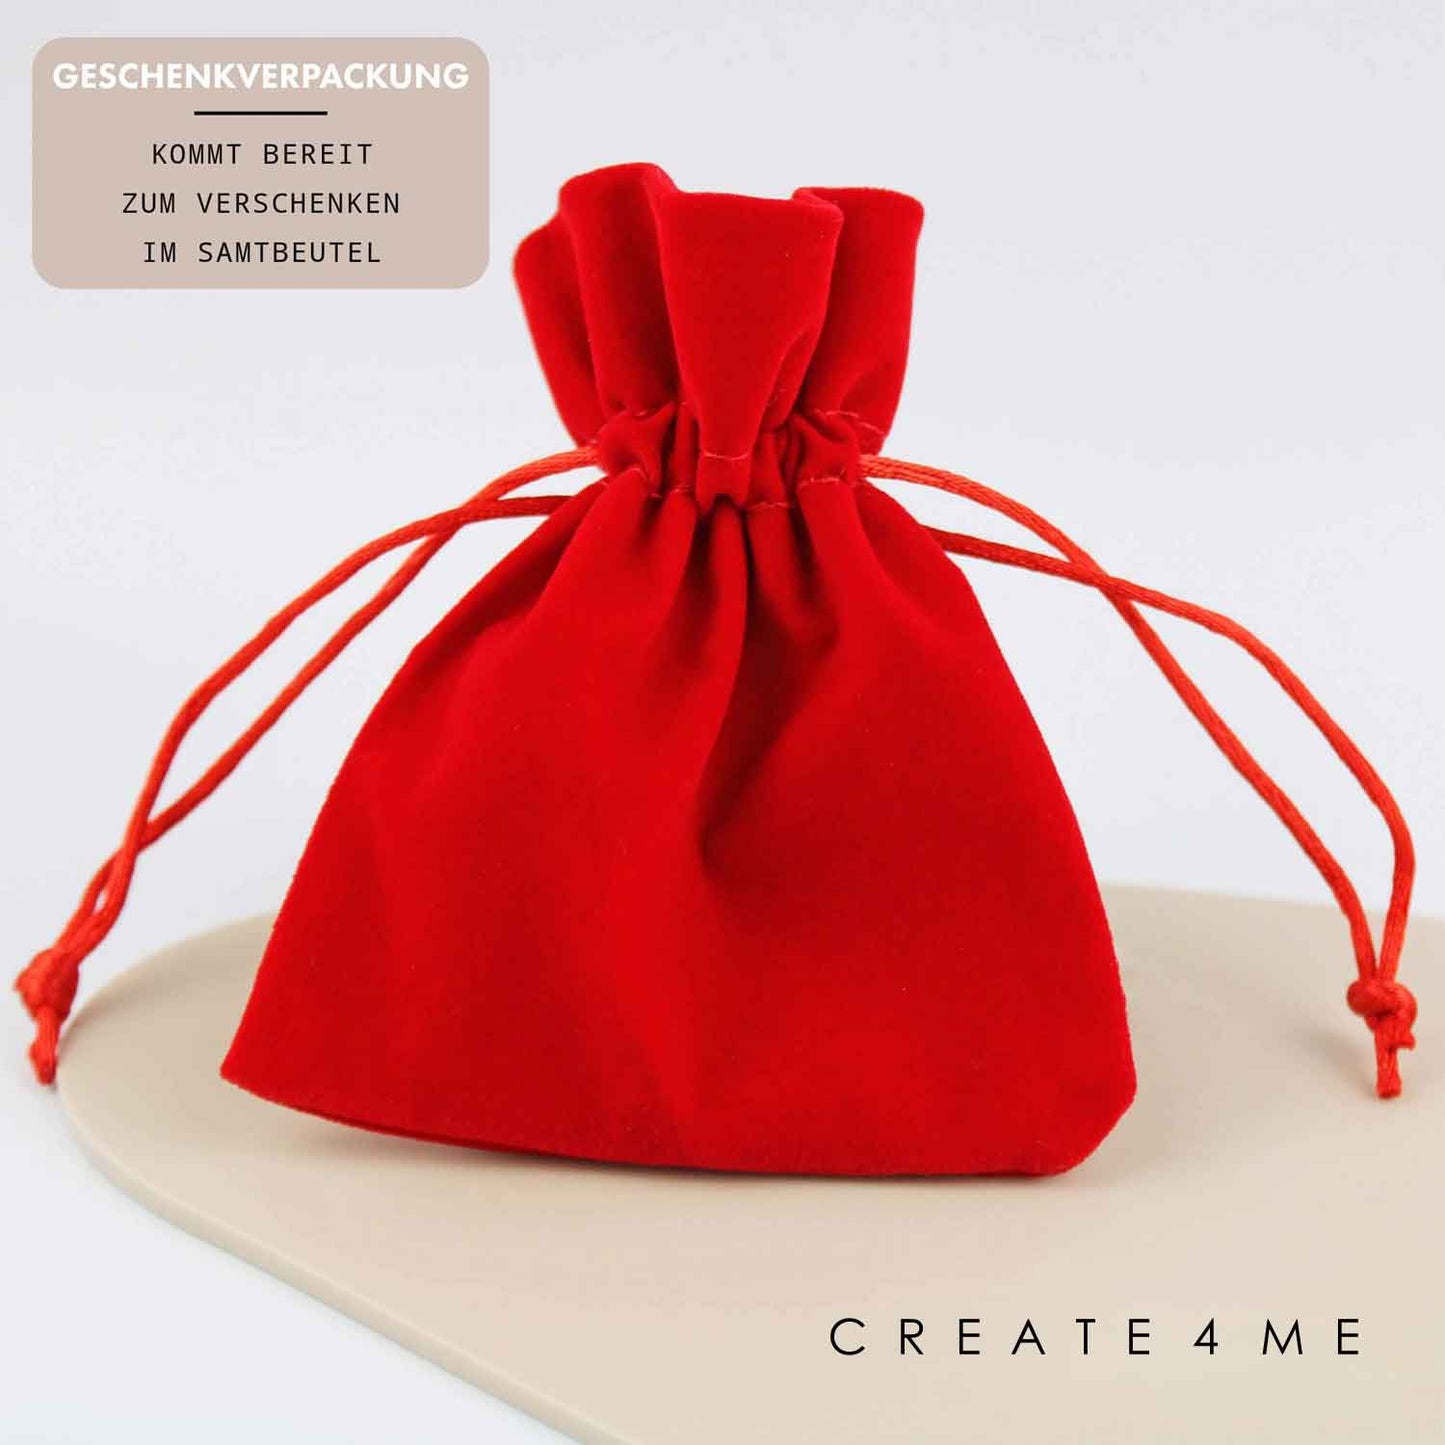 Geschenkverpackung Zum ersten Mal Oma - Schlüsselanhänger personalisiert Create4me